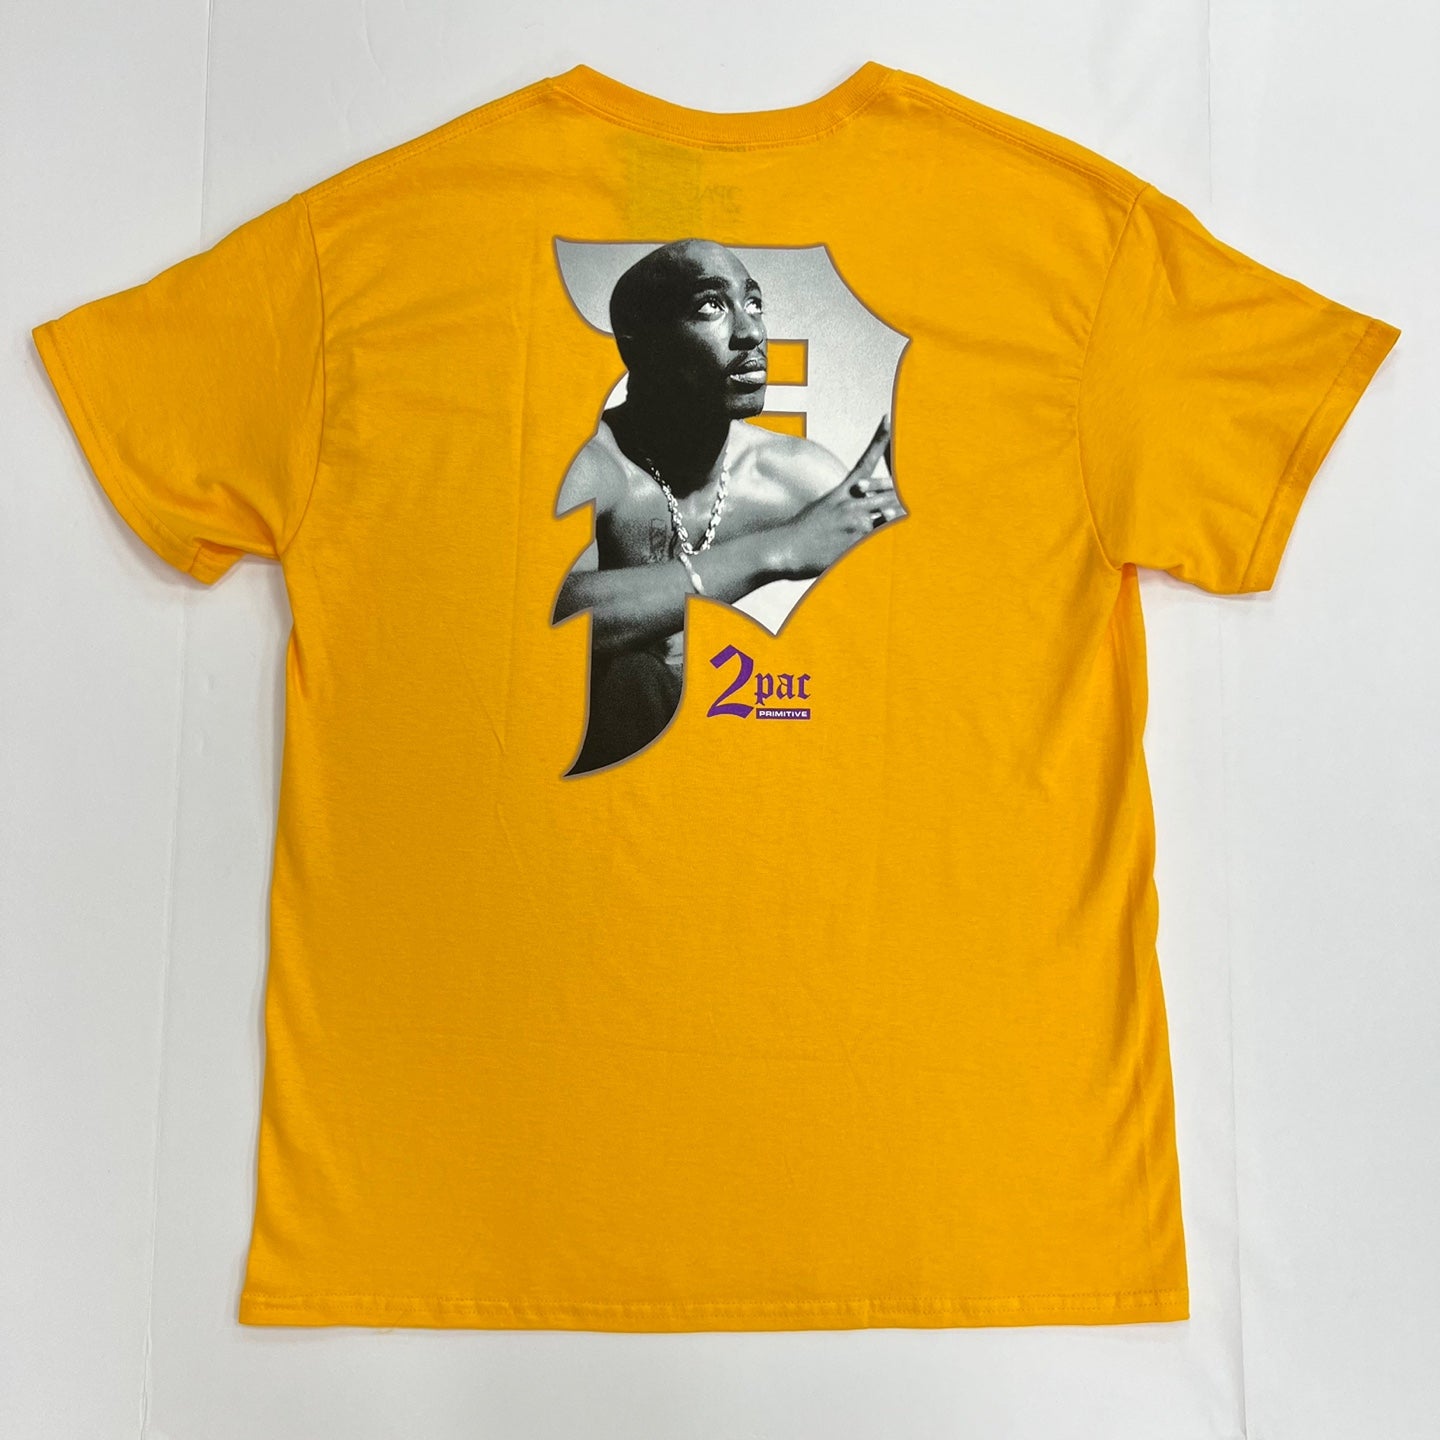 Primitive x Tupac Shakur Praise T-Shirt